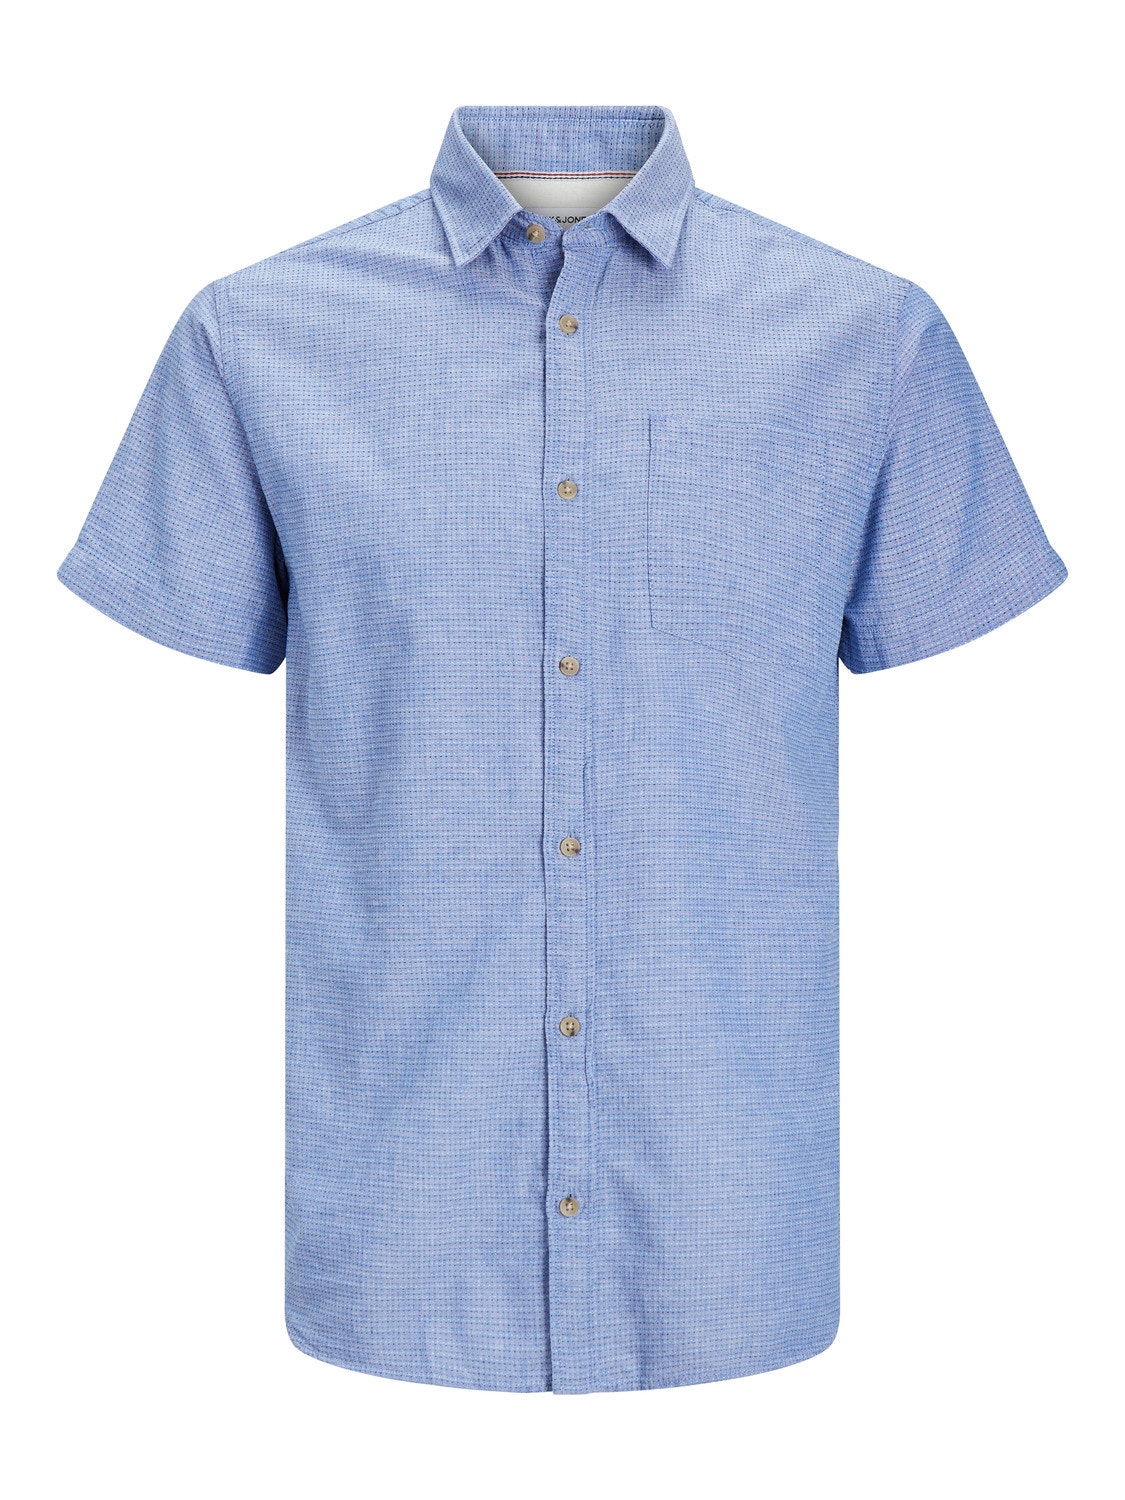 Jack & Jones Slim Fit Shirt -Ensign Blue - 12248524